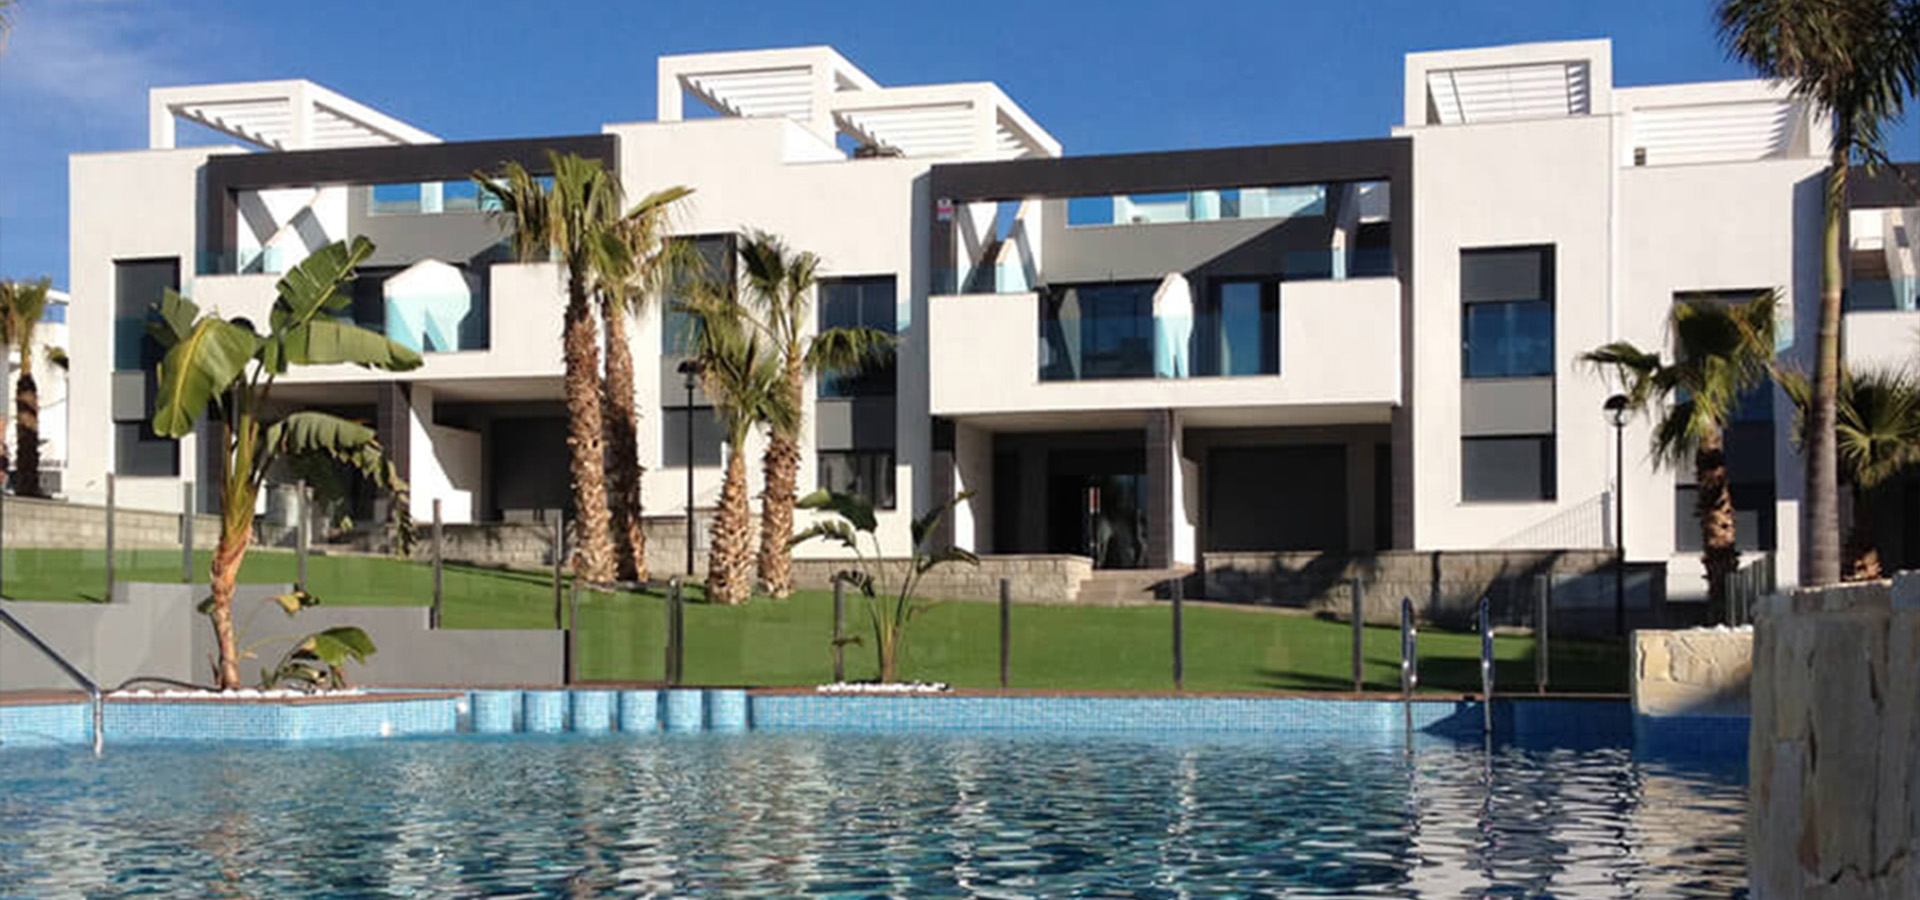 Vakantieappartement nabij Torrevieja in Spanje